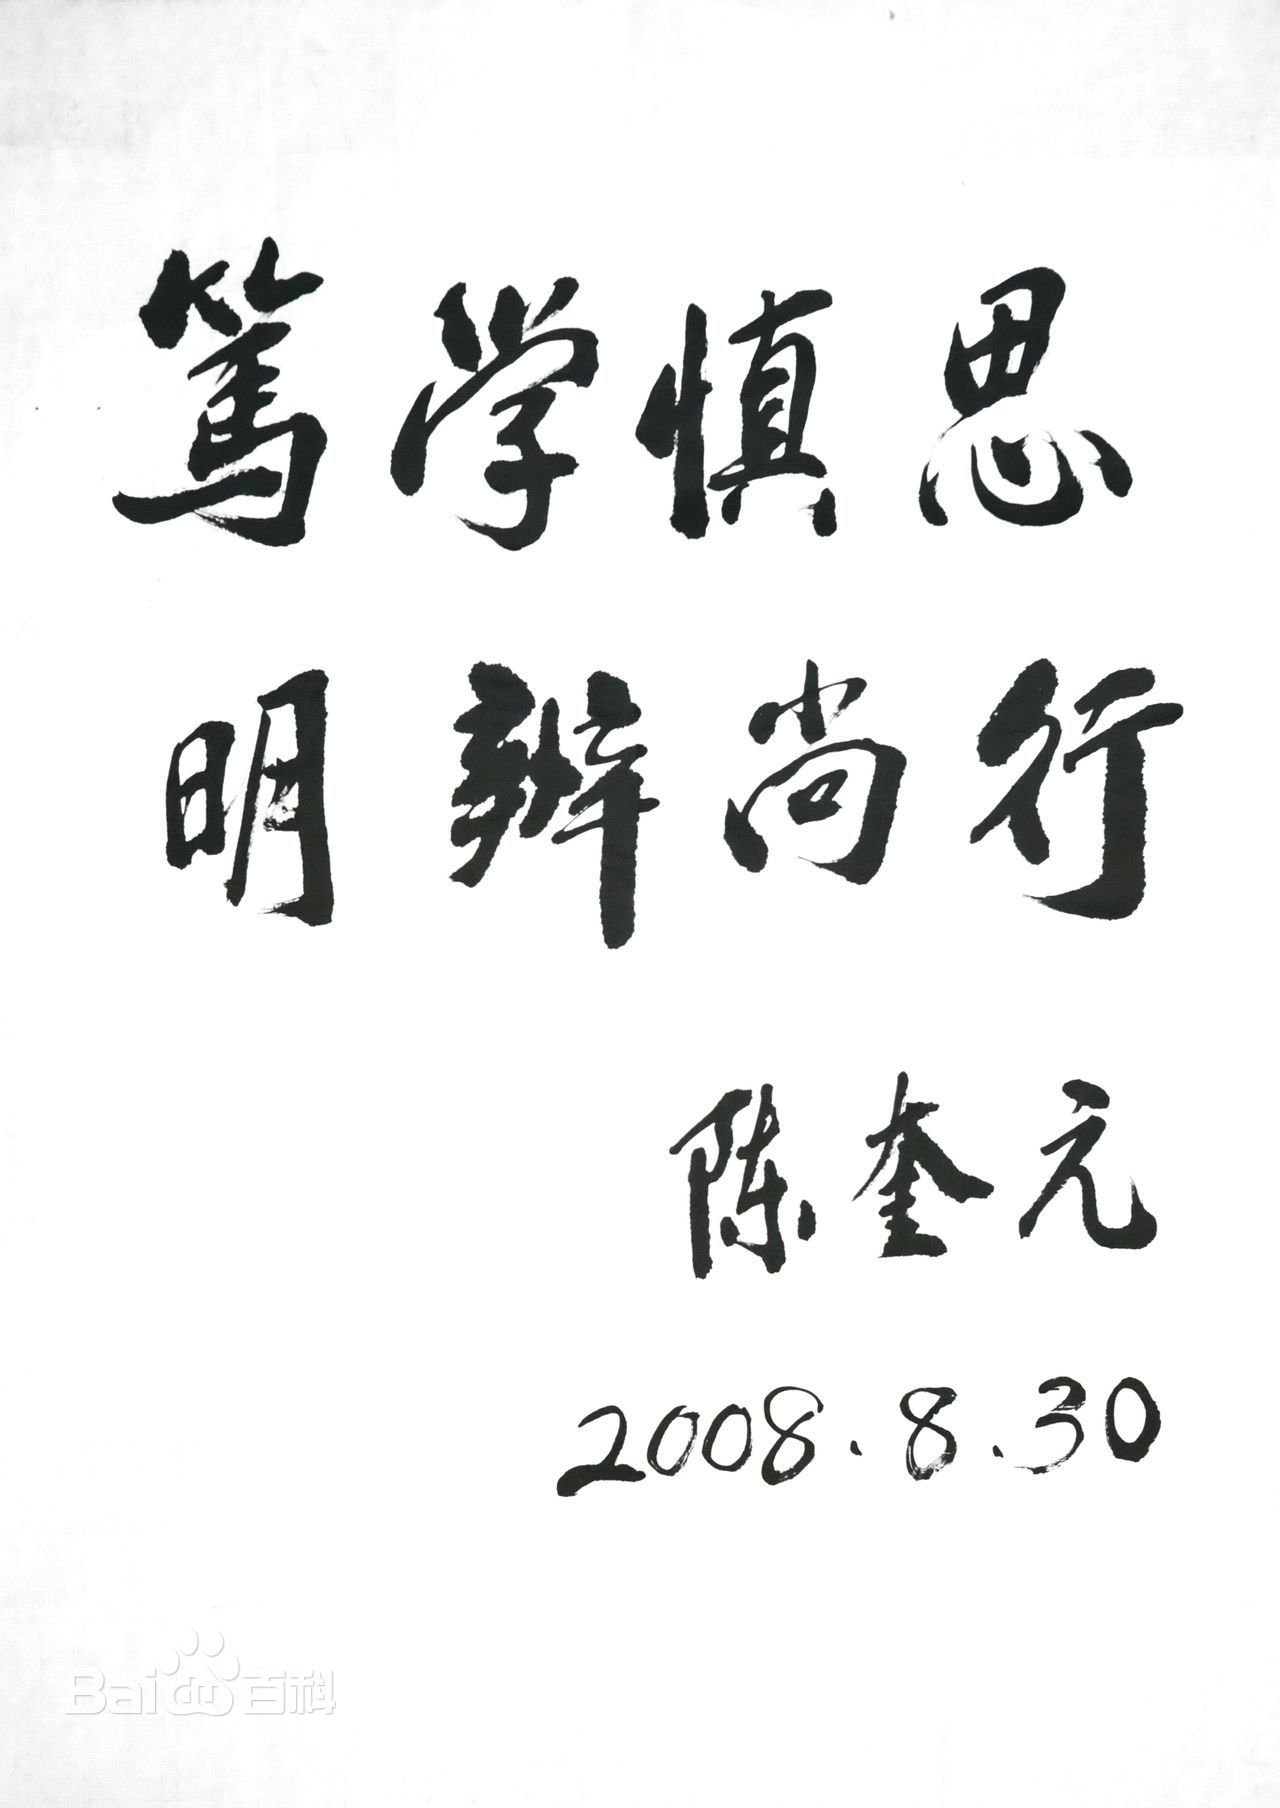 十一屆全國政協副主席陳奎元題寫